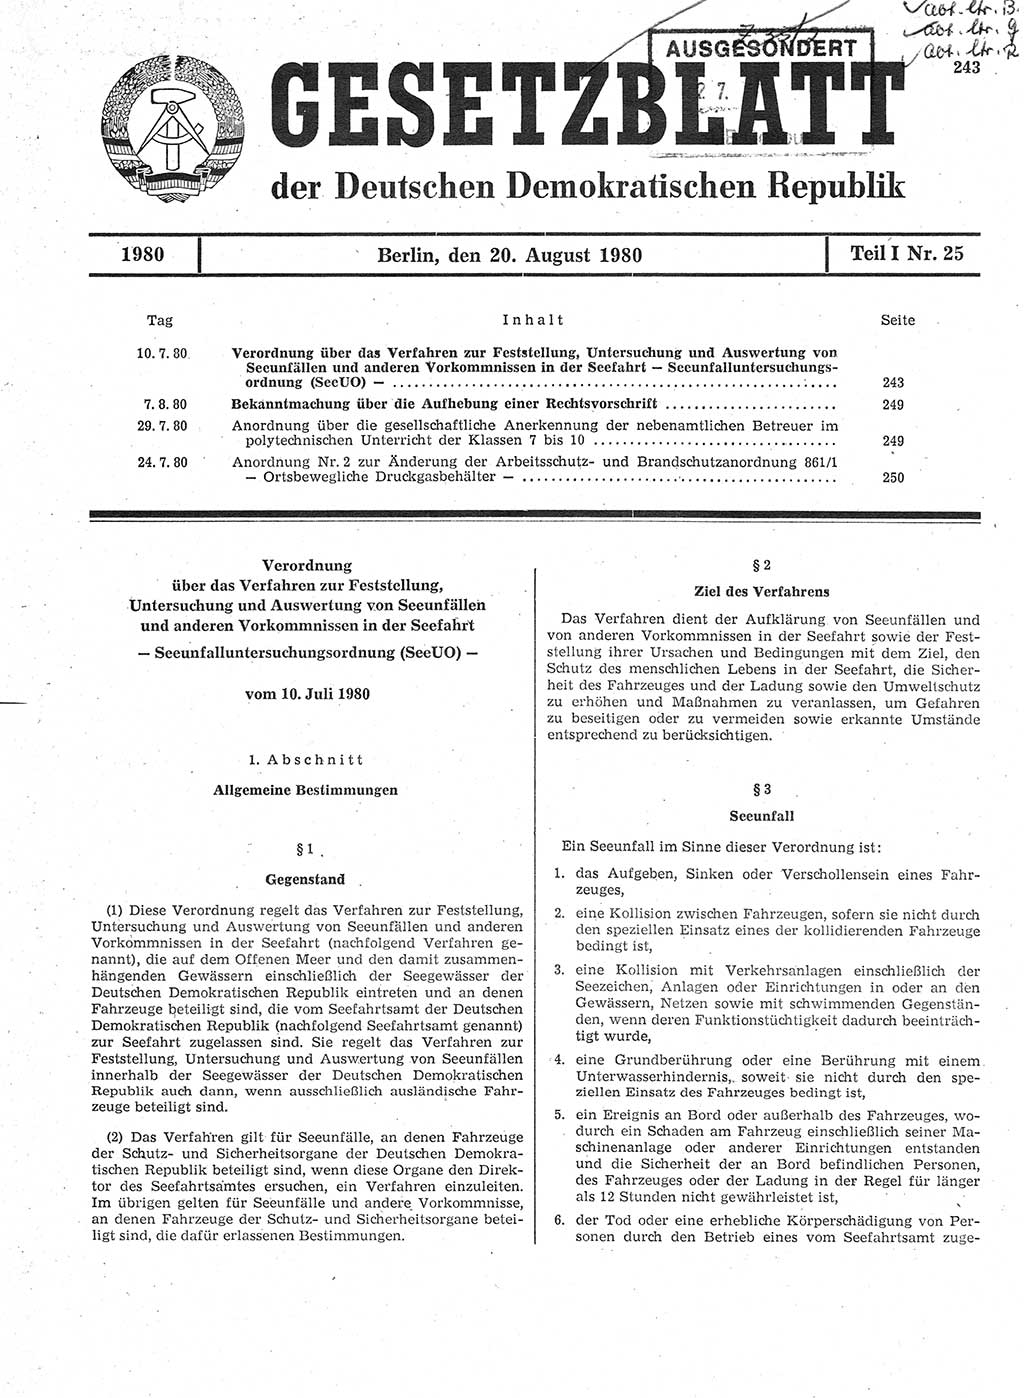 Gesetzblatt (GBl.) der Deutschen Demokratischen Republik (DDR) Teil Ⅰ 1980, Seite 243 (GBl. DDR Ⅰ 1980, S. 243)